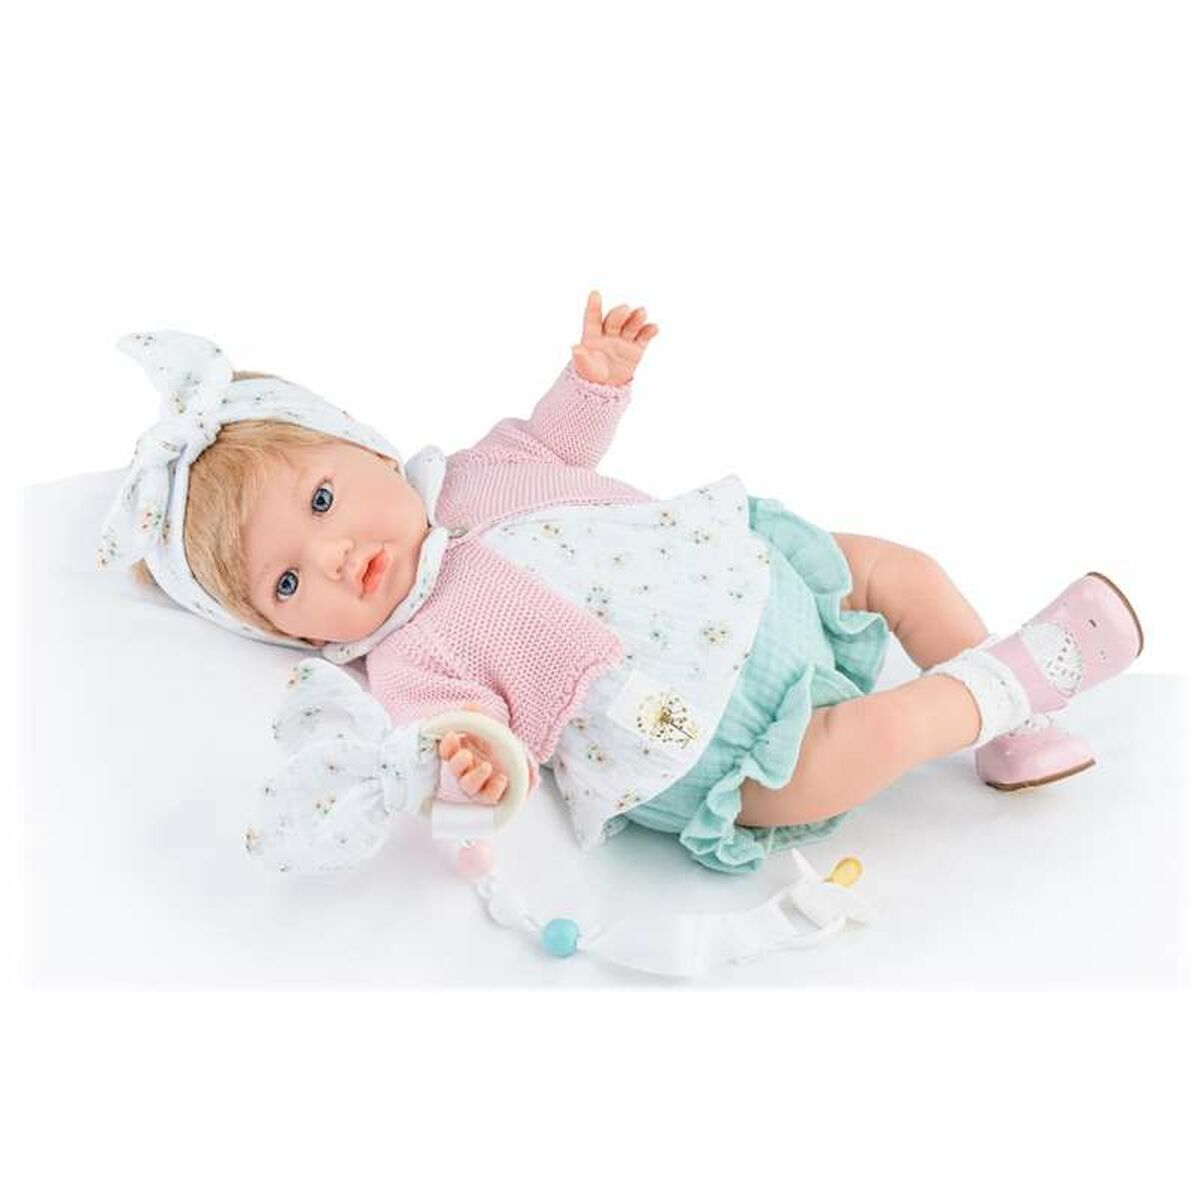 Osta tuote Vauvanukke Marina & Pau Alina 45 cm Pehmeä verkkokaupastamme Korhone: Lelut & Asut 20% alennuksella koodilla VIIKONLOPPU